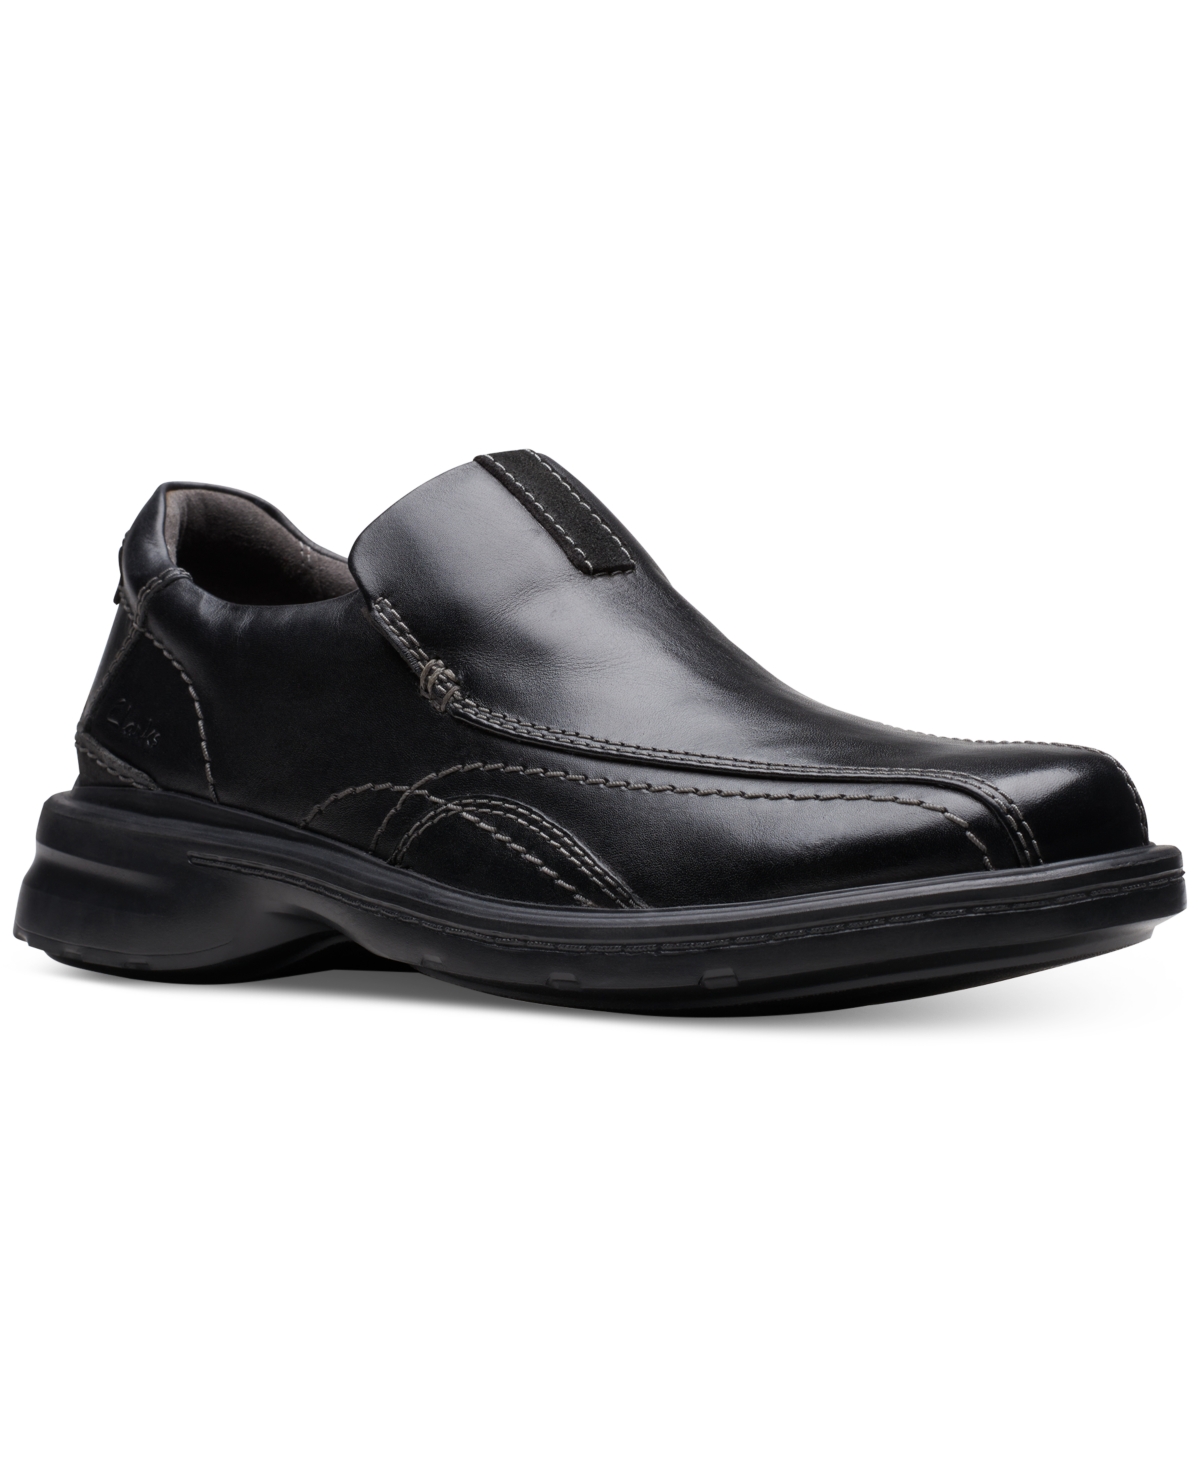 Clarks Men's Gessler Step Loafers In Black Leather